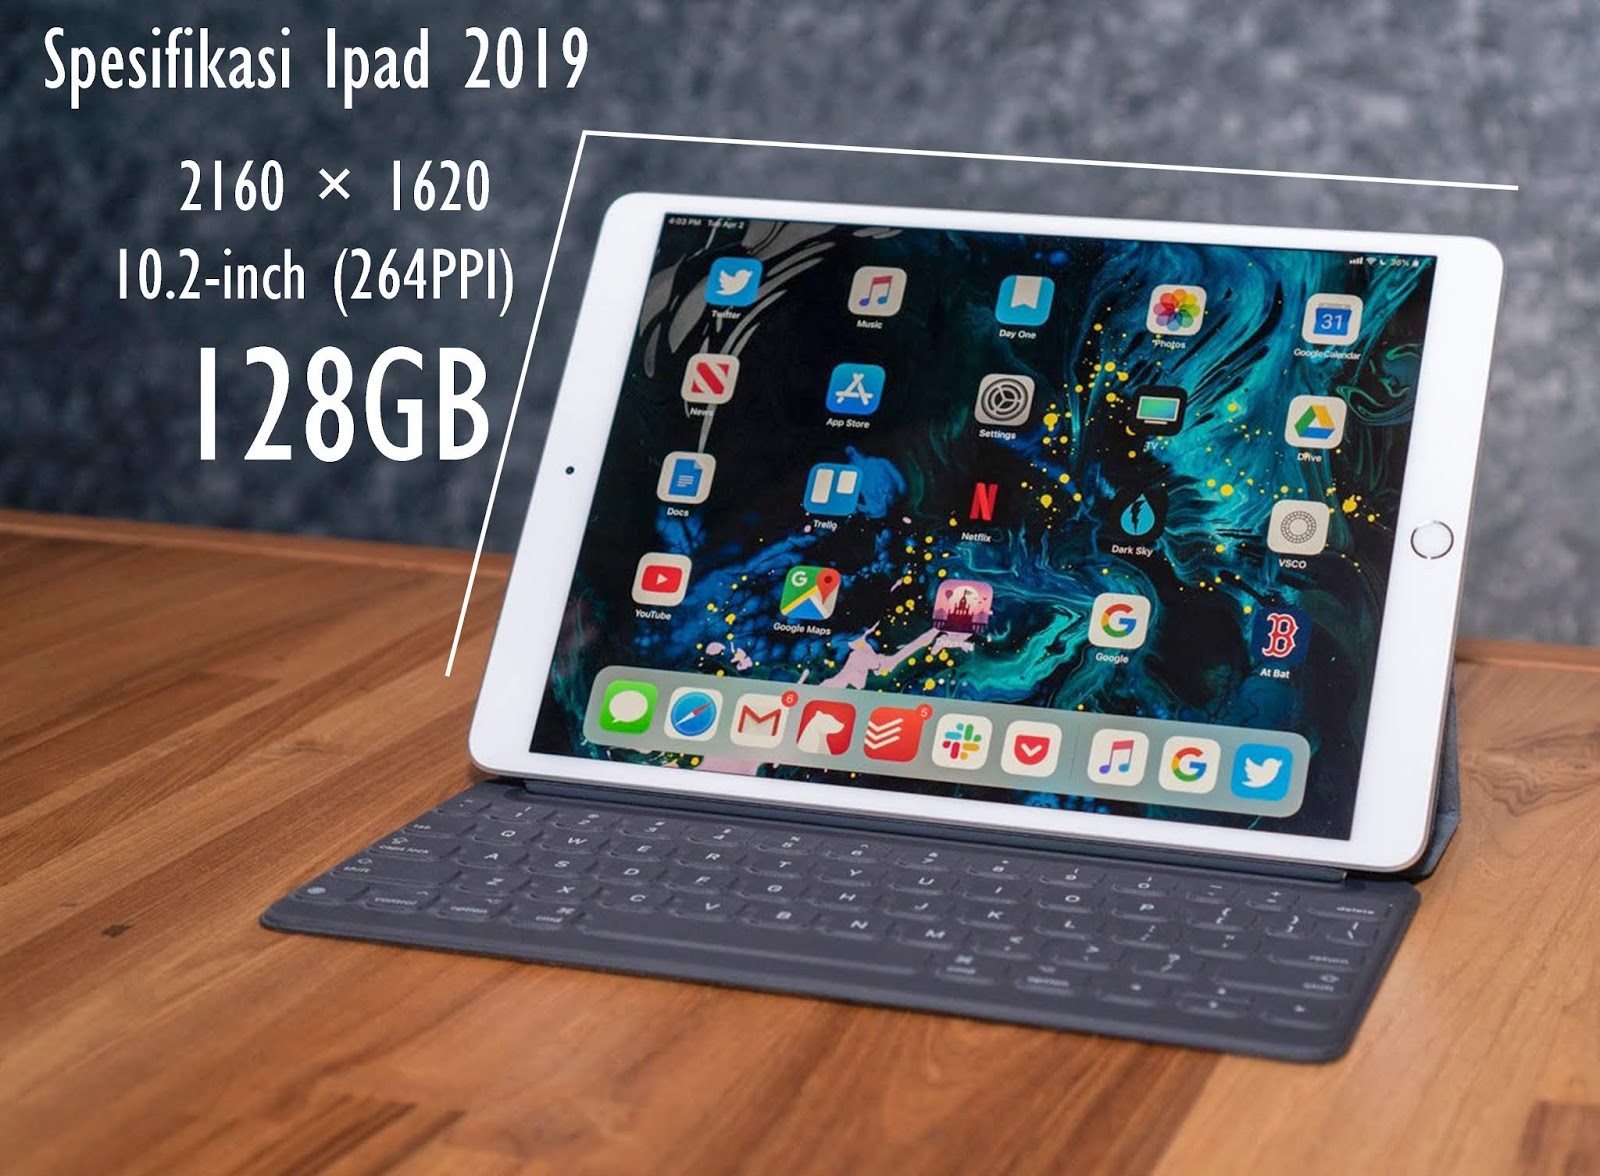 Ipad Mini 5 Harga / Jual APPLE iPad Mini 5 2019 64GB WiFi Cellular